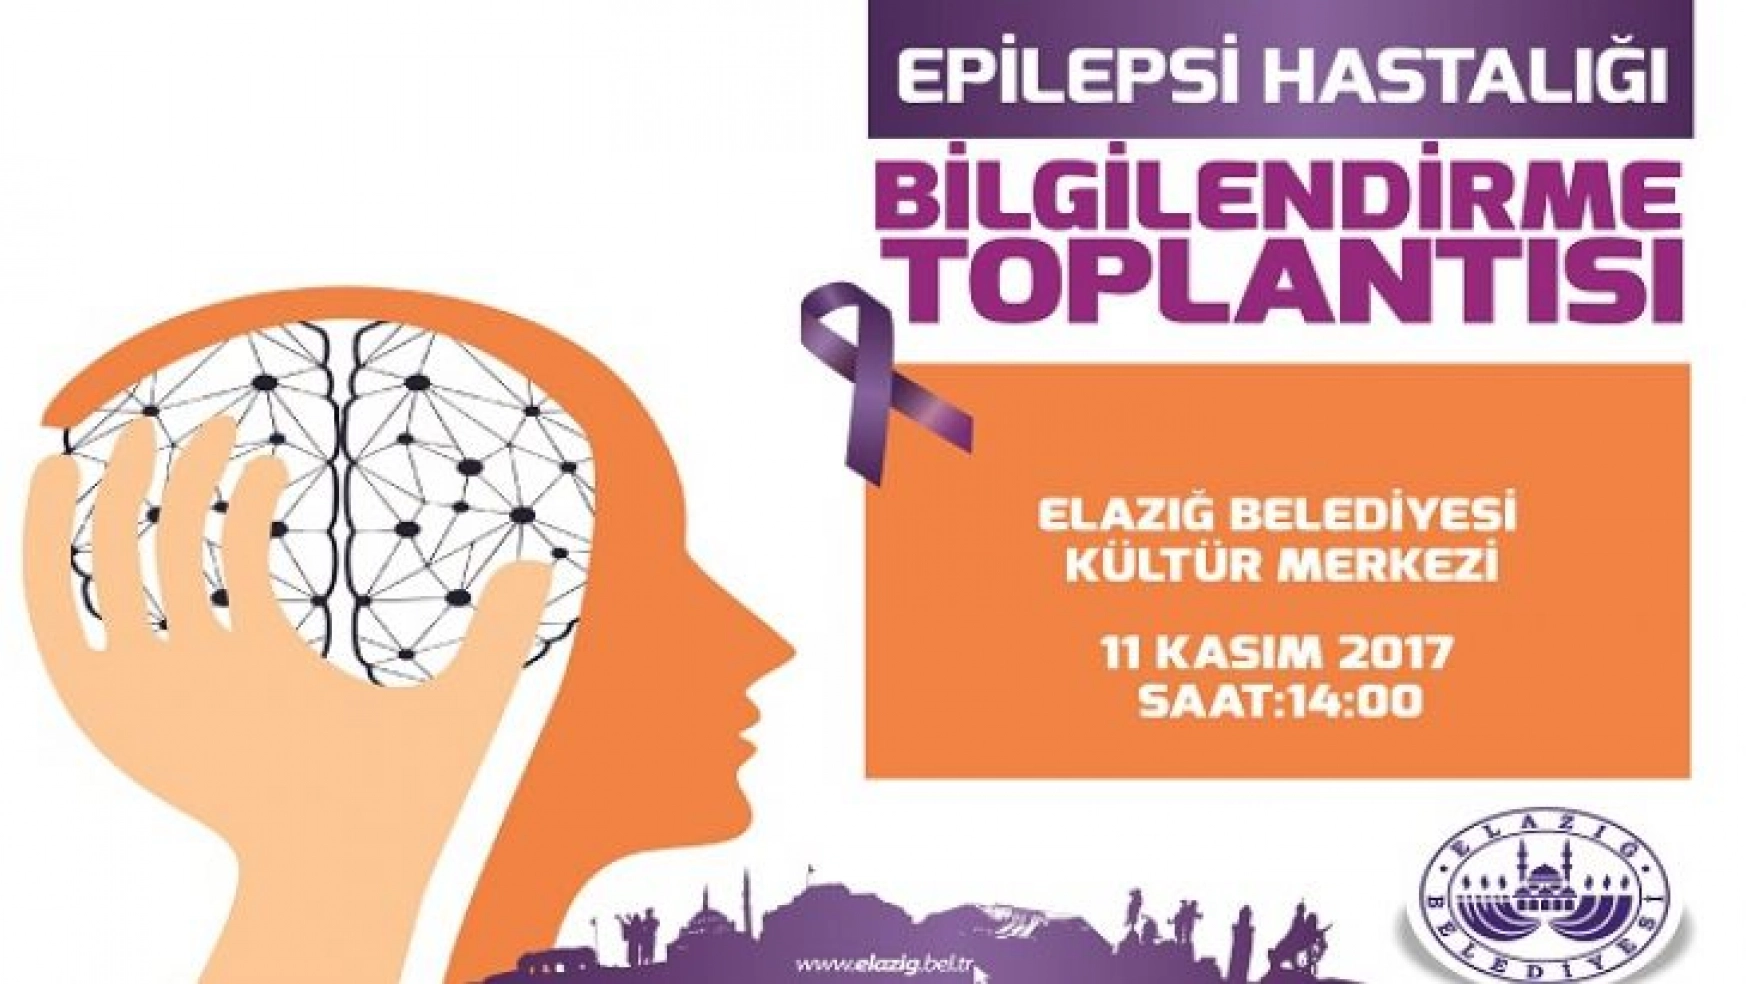 Epilepsi Hasta Bilgilendirme Toplantısı Gerçekleştirilecek